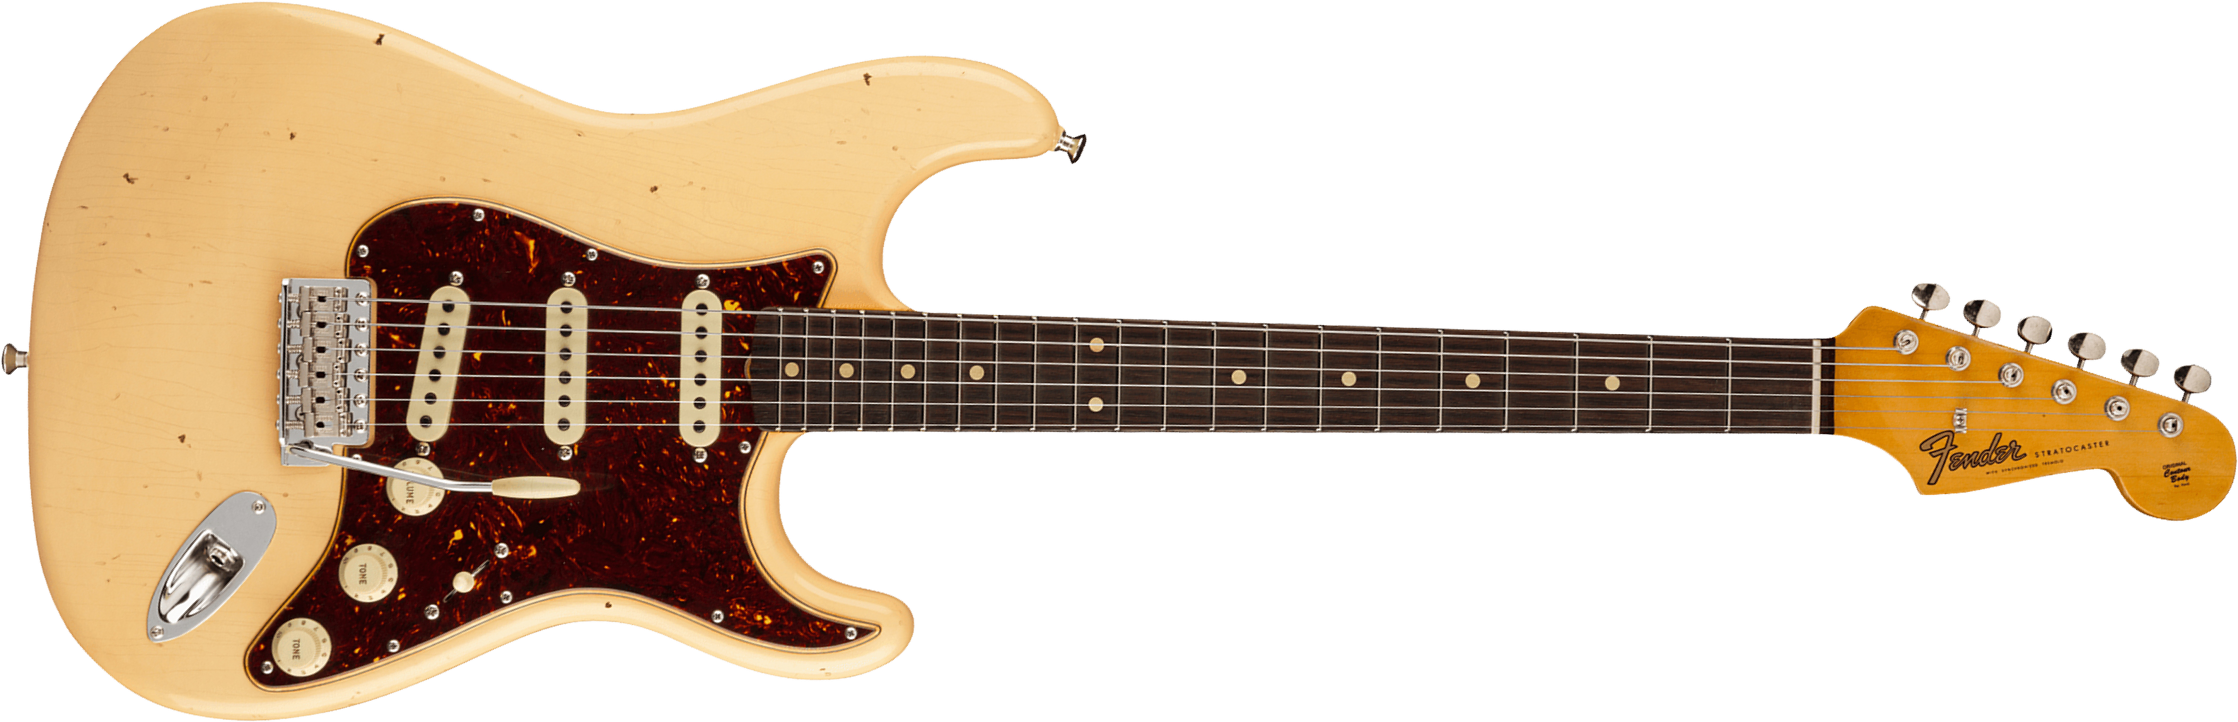 Fender Custom Shop Strat Postmodern Usa Rw - Journeyman Relic Vintage White - Elektrische gitaar in Str-vorm - Main picture